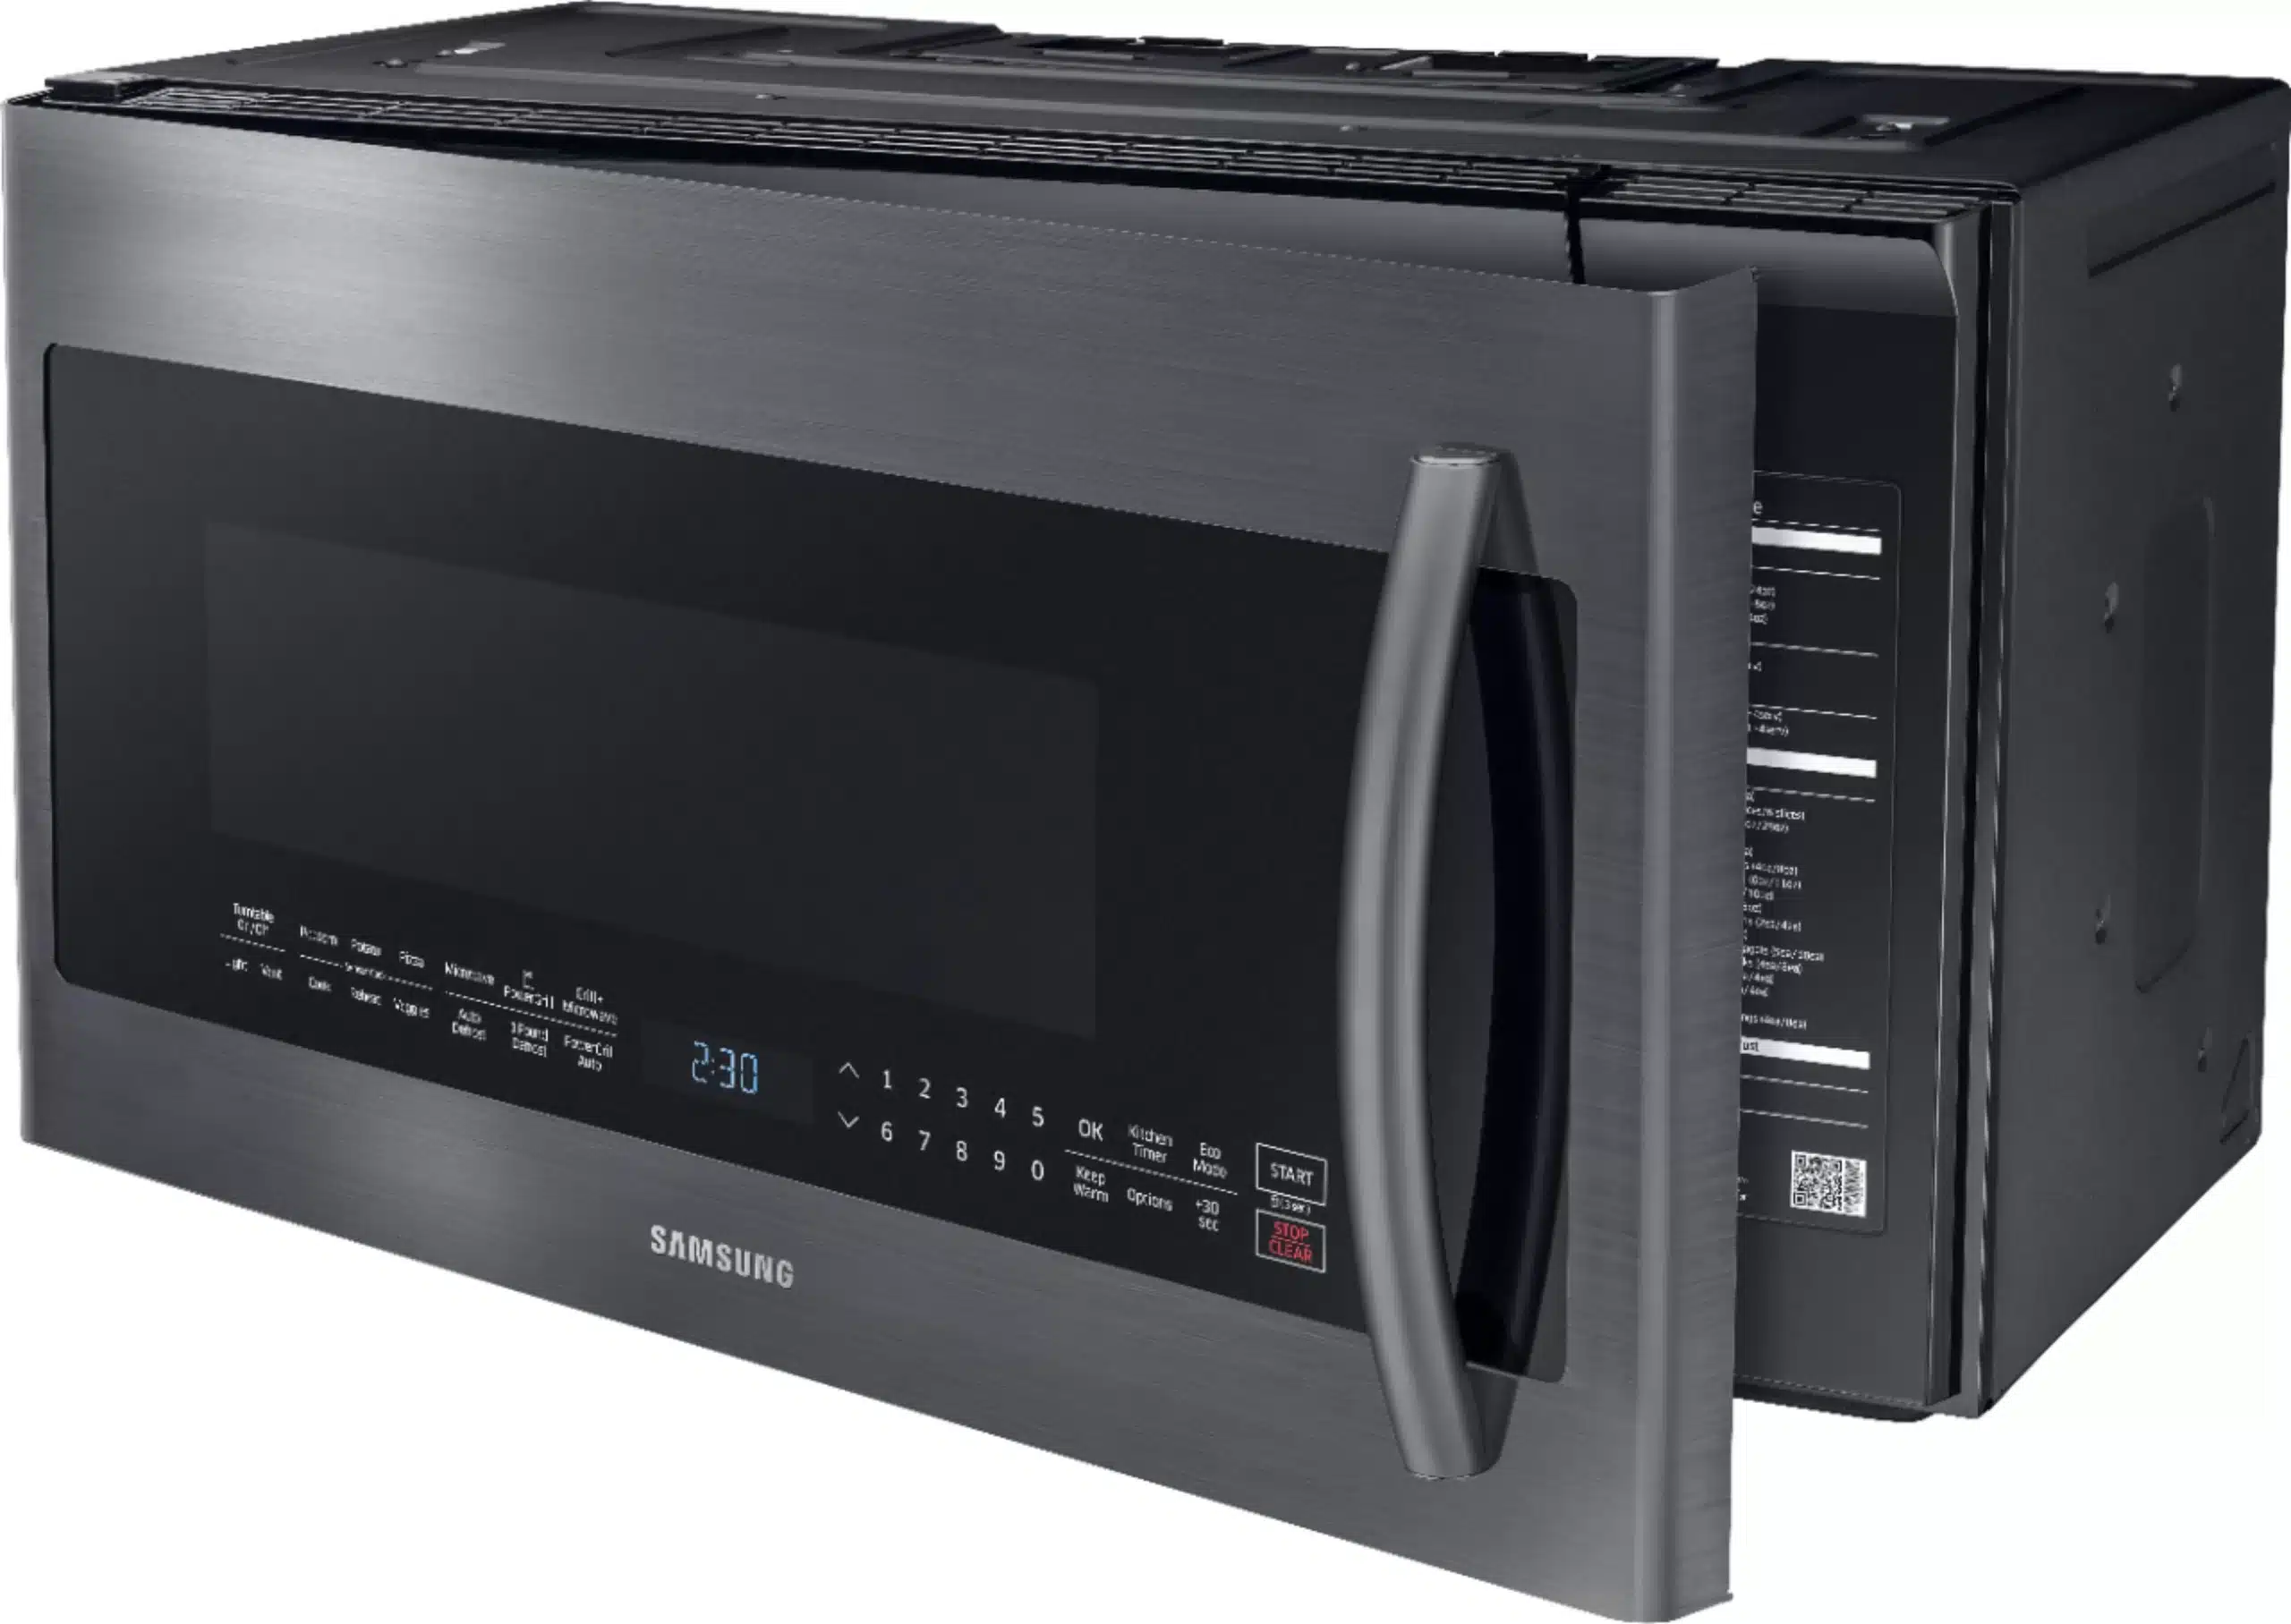 ge-vs-samsung-microwaves